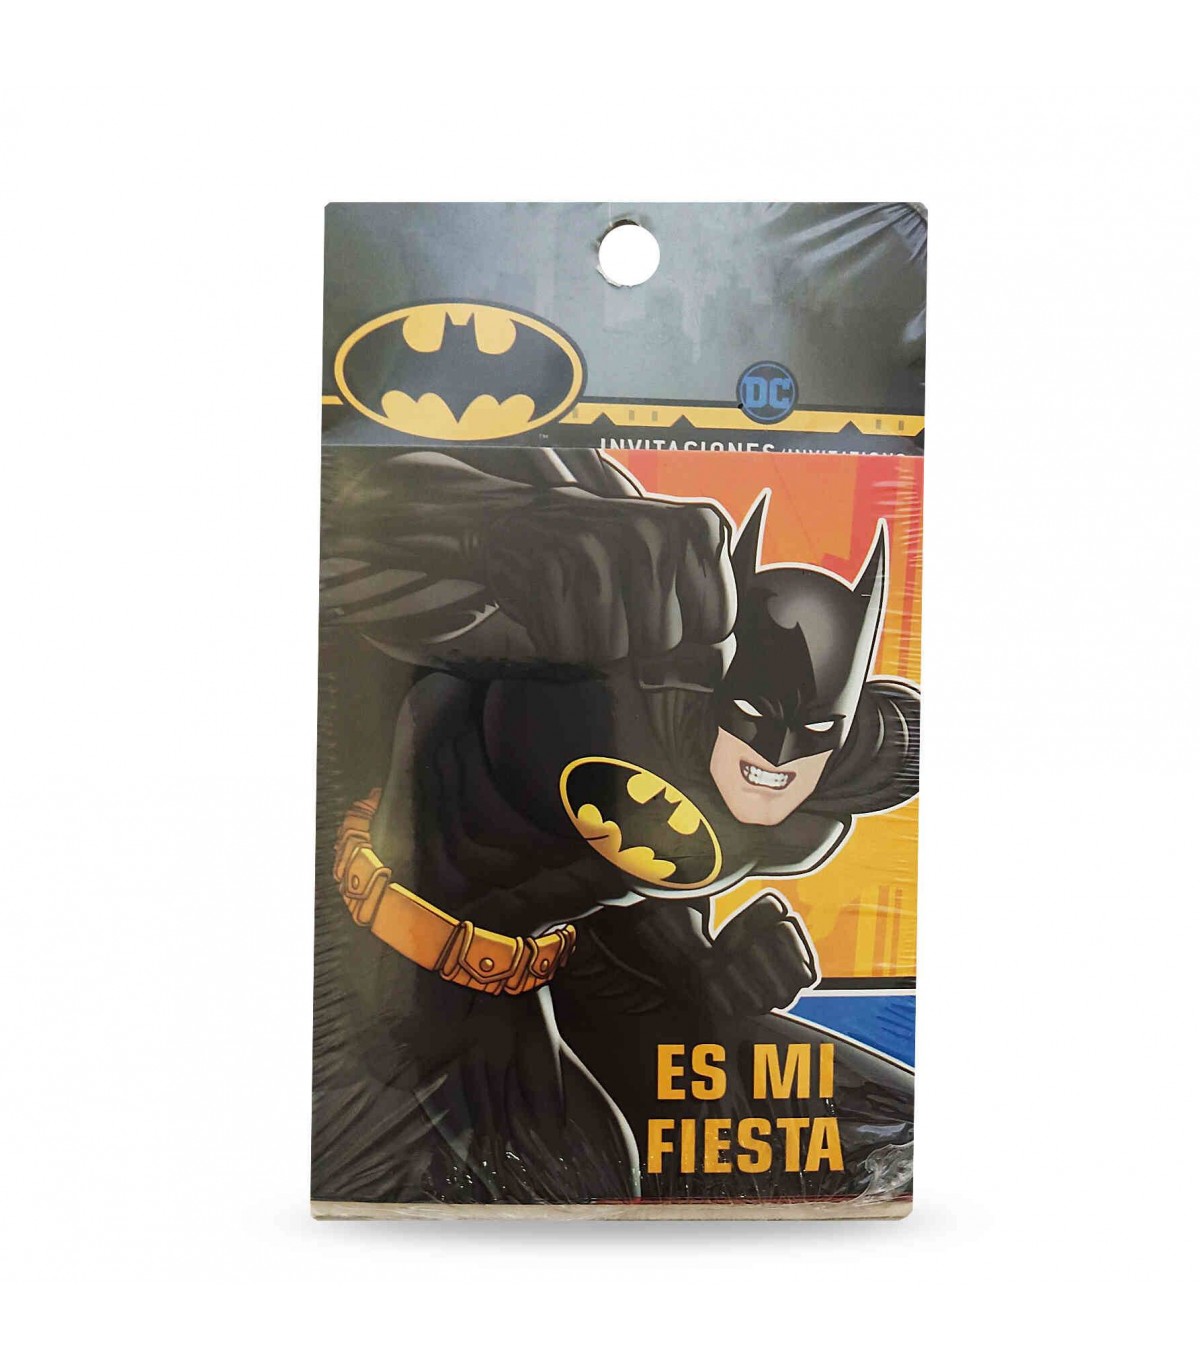 Batman Invitaciones Fiesta Paquete de 6 envío mundial con pagos seguros  Feliz compra Precios al por mayor 